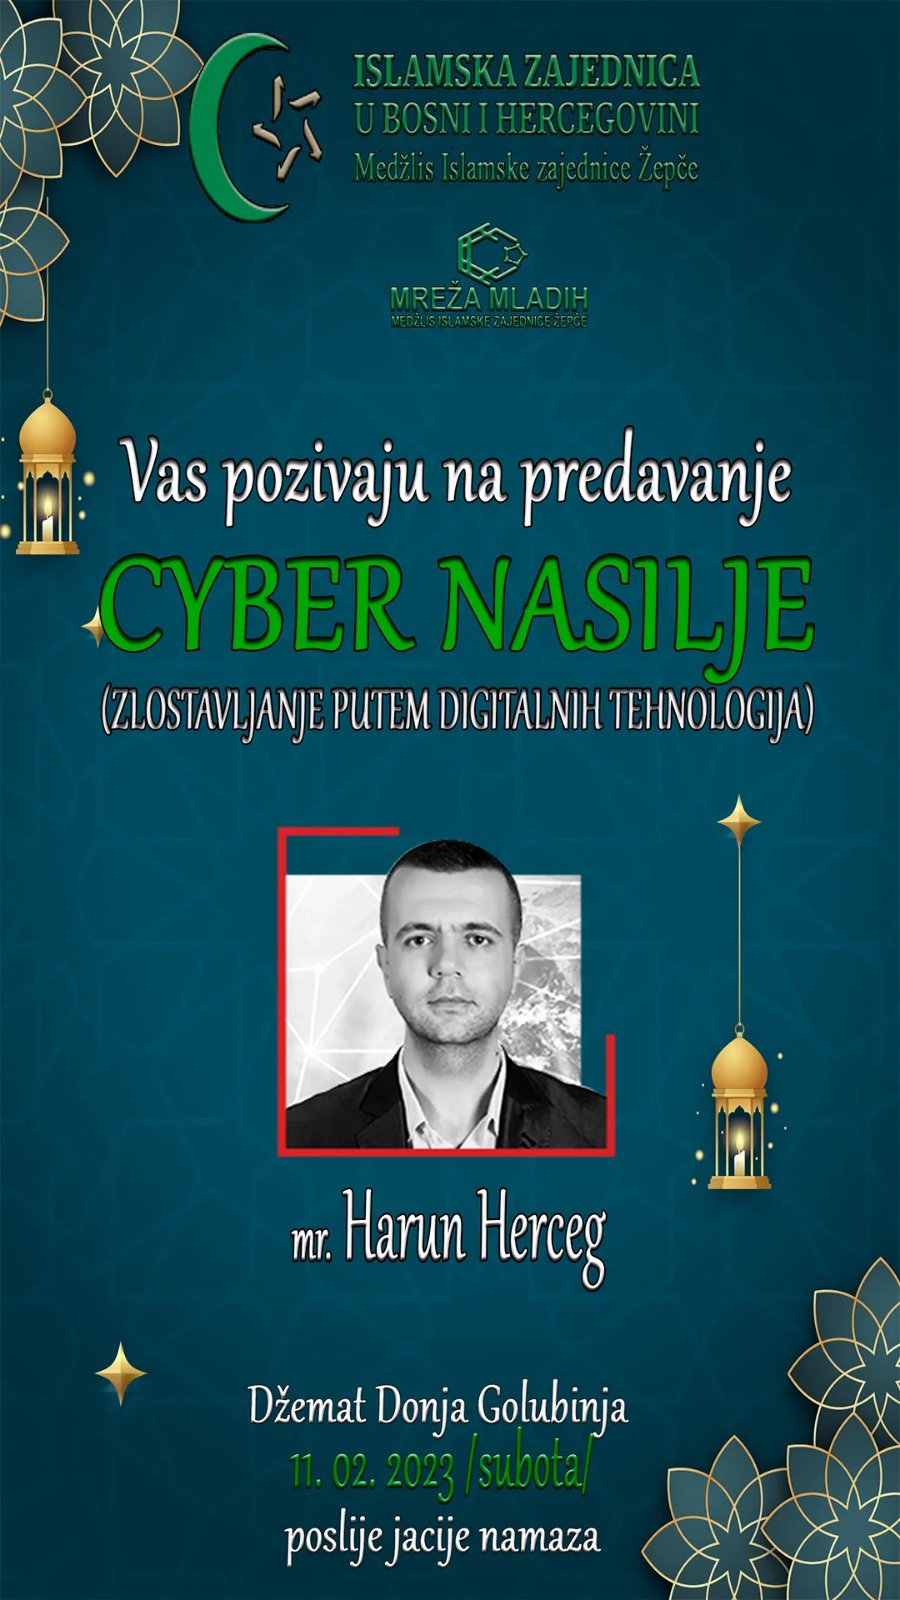 EDUKATIVNO PREDAVANJE – “CYBER NASILJE” gost predavač profesor Elči Ibrahim-pašine medrese u Travniku, mr. Harun Herceg